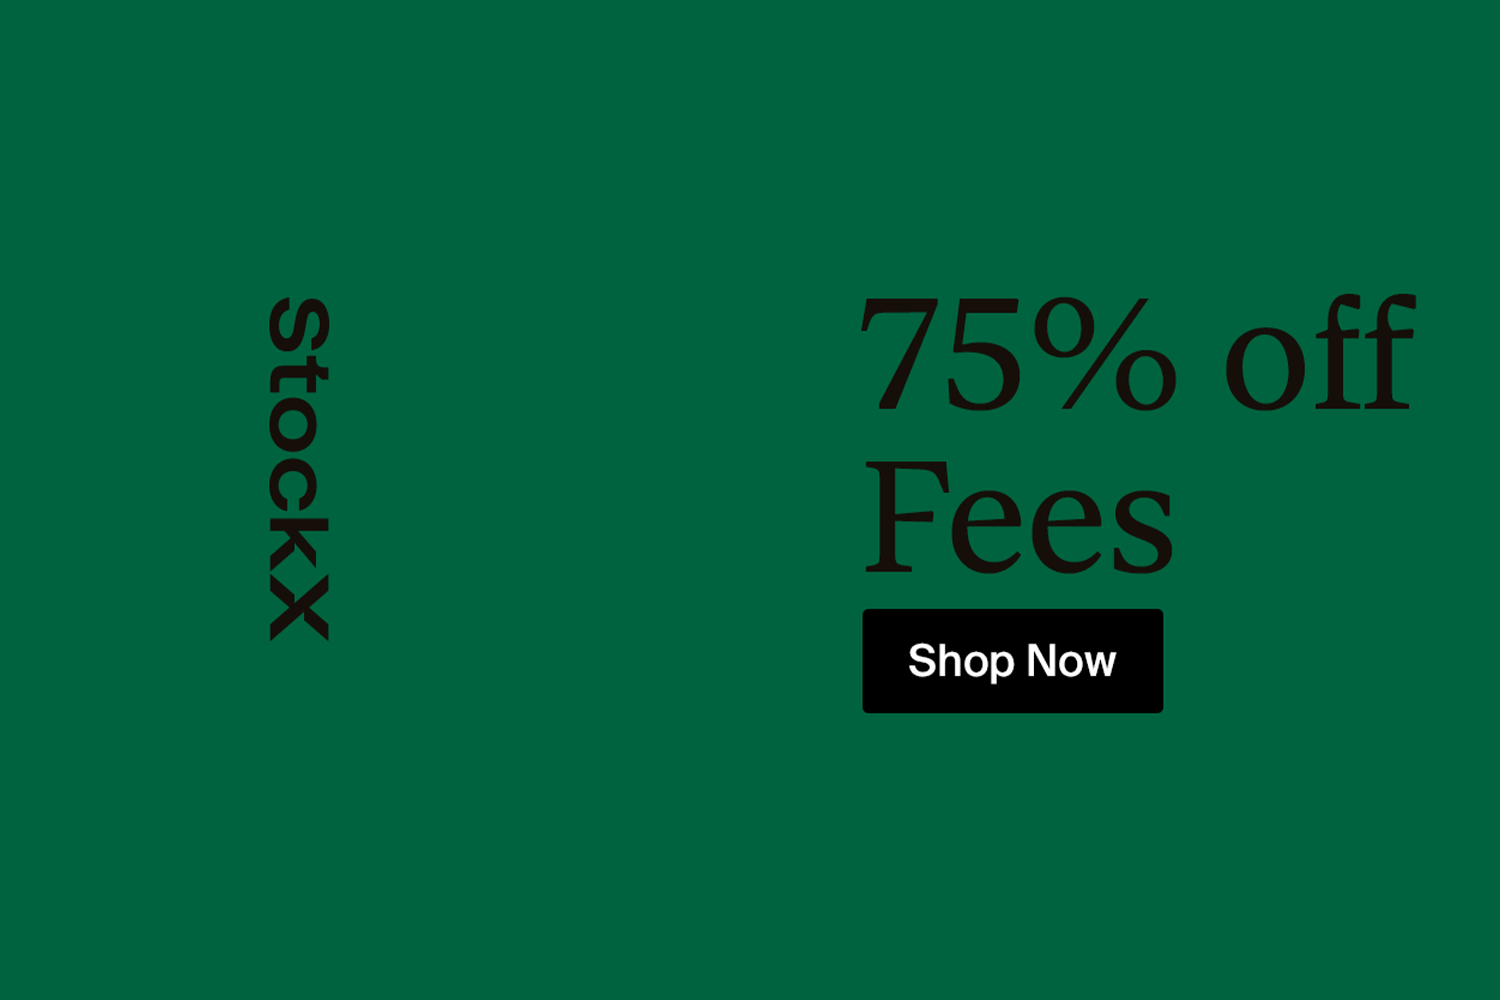 Nur für kürze Zeit: 75% Rabatt off fees bei StockX